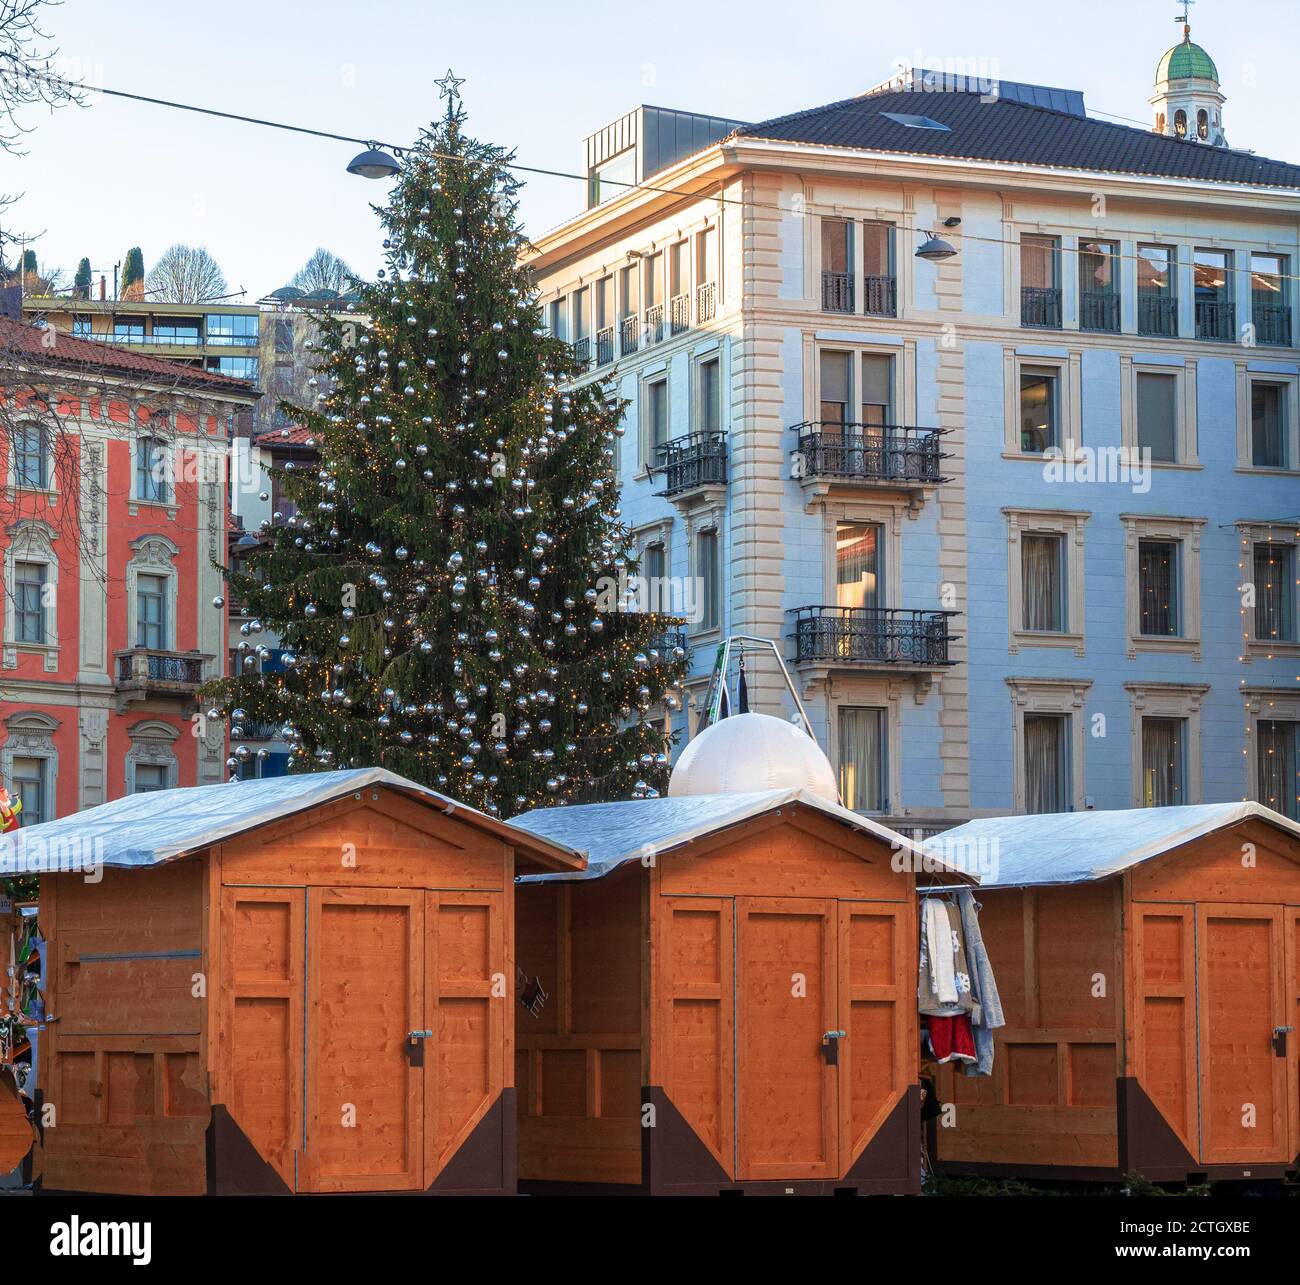 Platz mit einem großen Weihnachtsbaum und Holzhäusern für Märkte zwischen den eleganten Gebäuden von Lugano, Schweiz, dekoriert Stockfoto